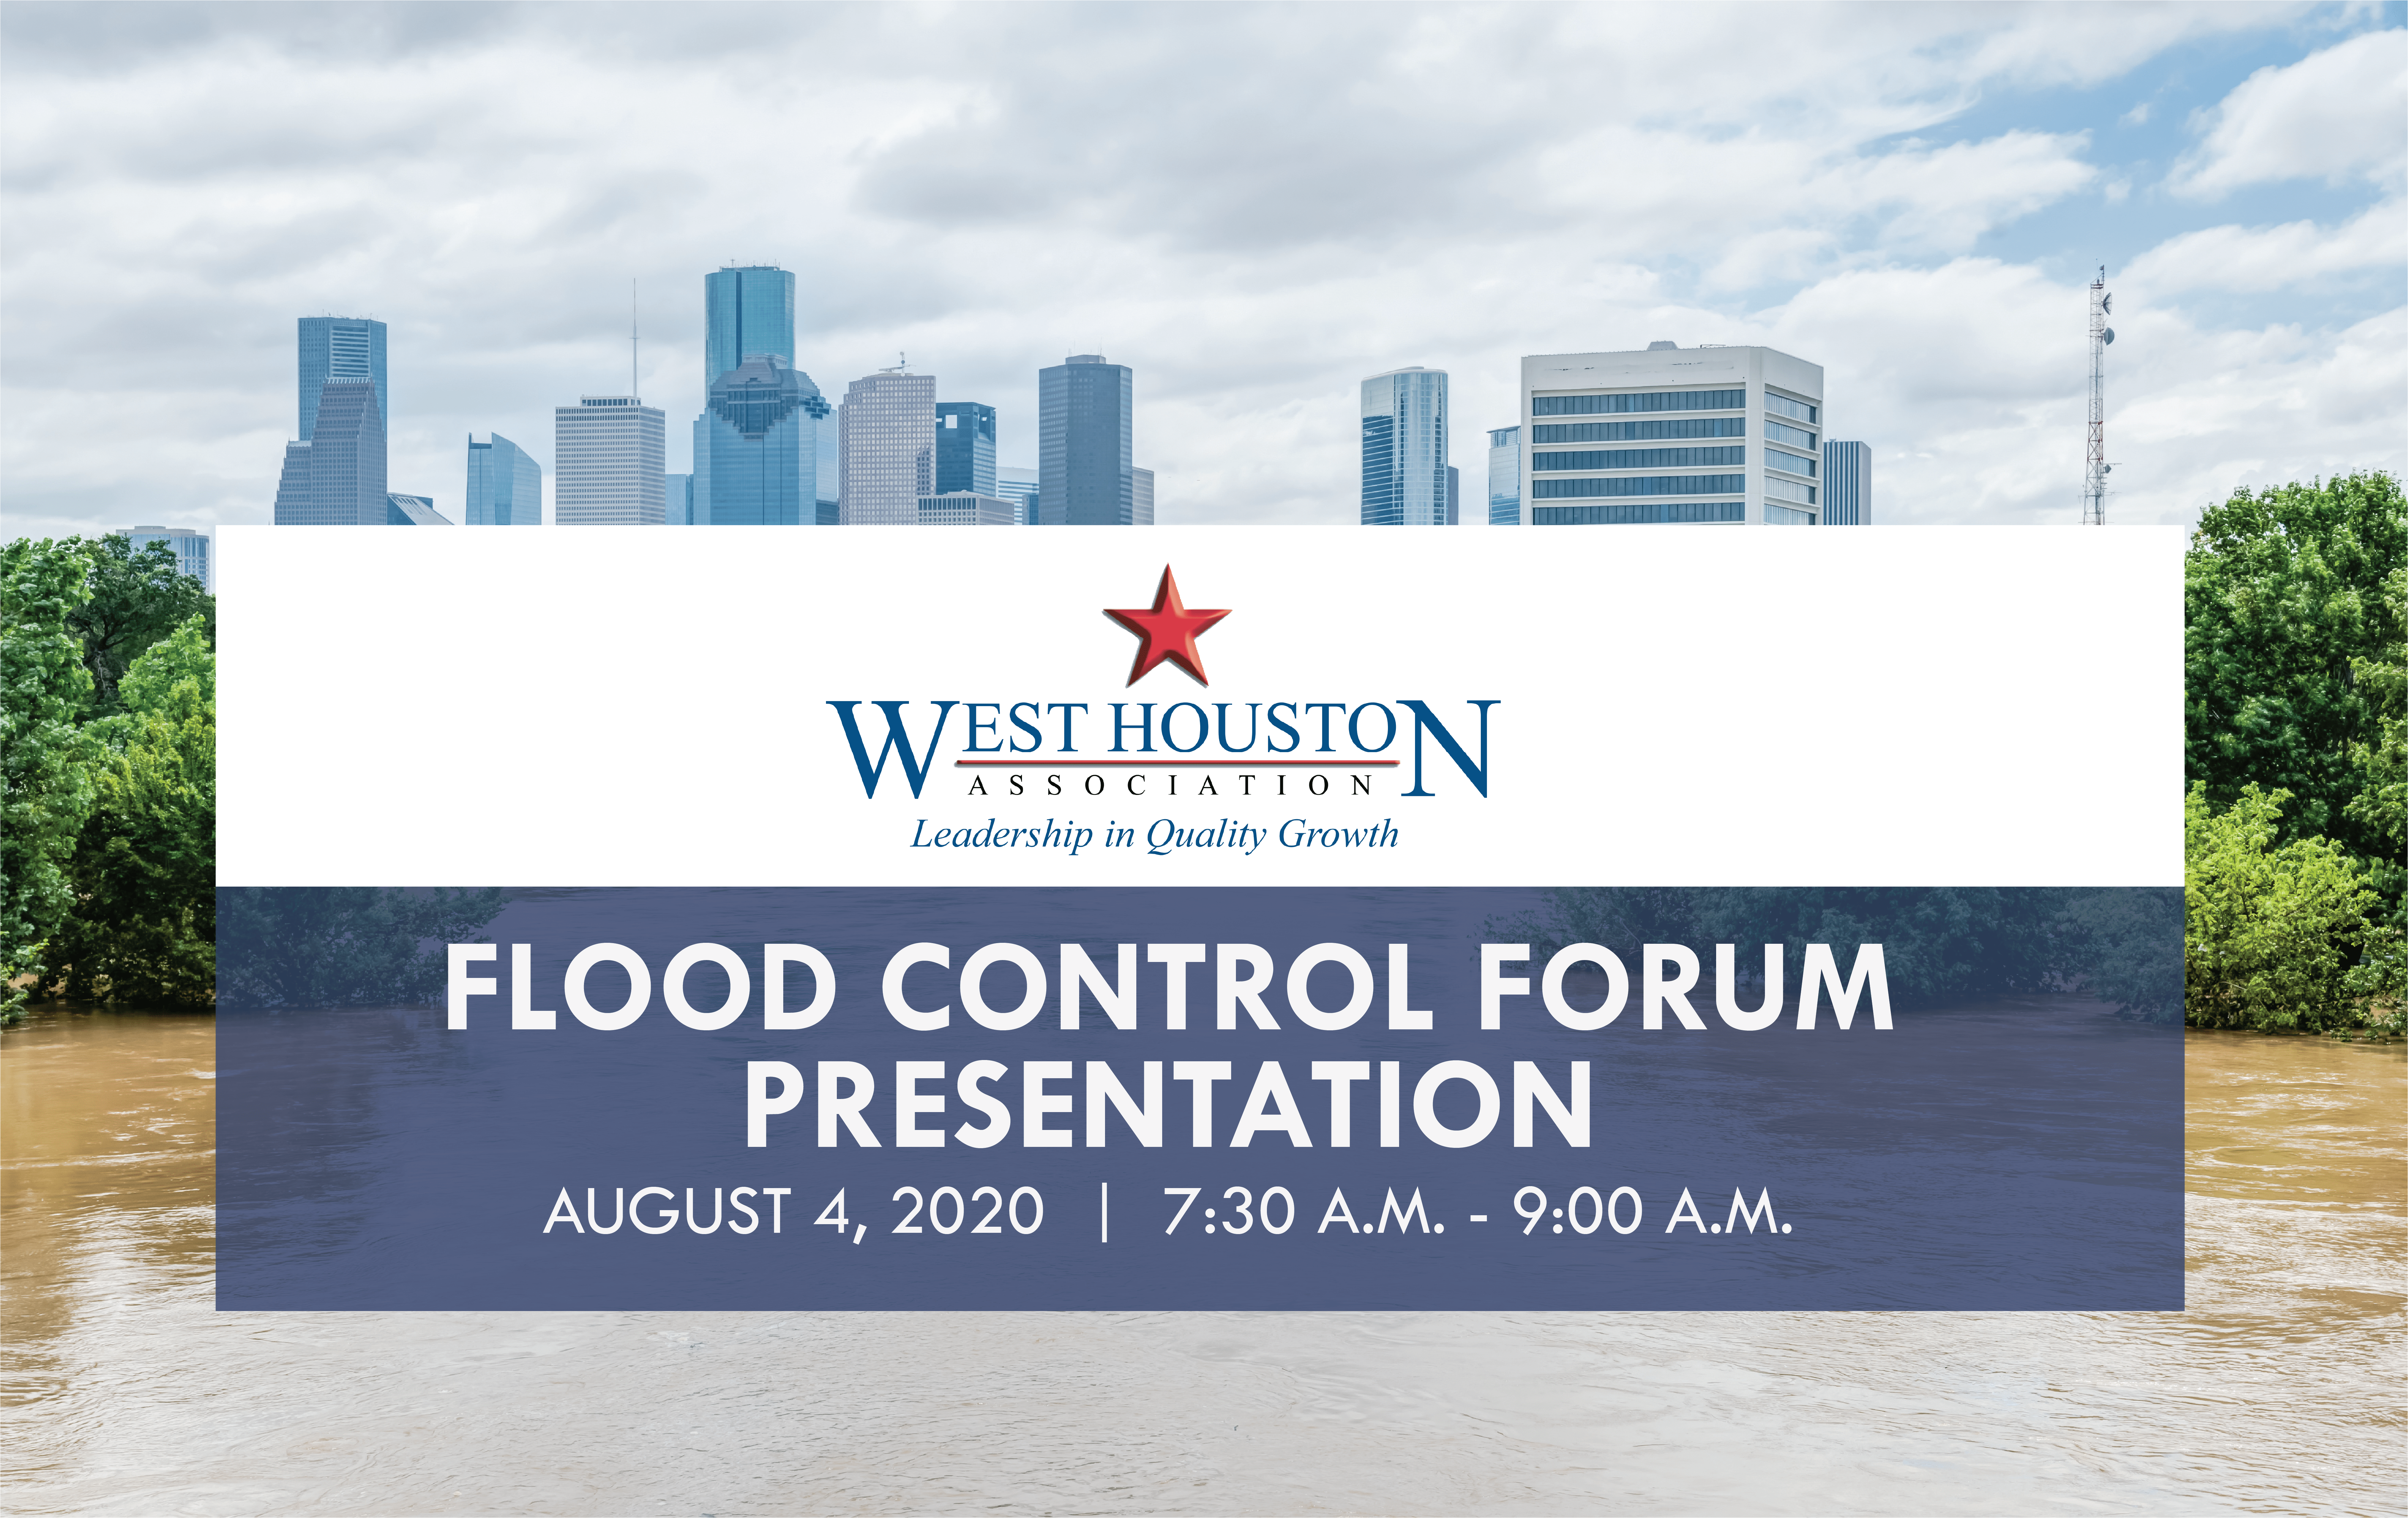 Flood Control Forum – Public Resources